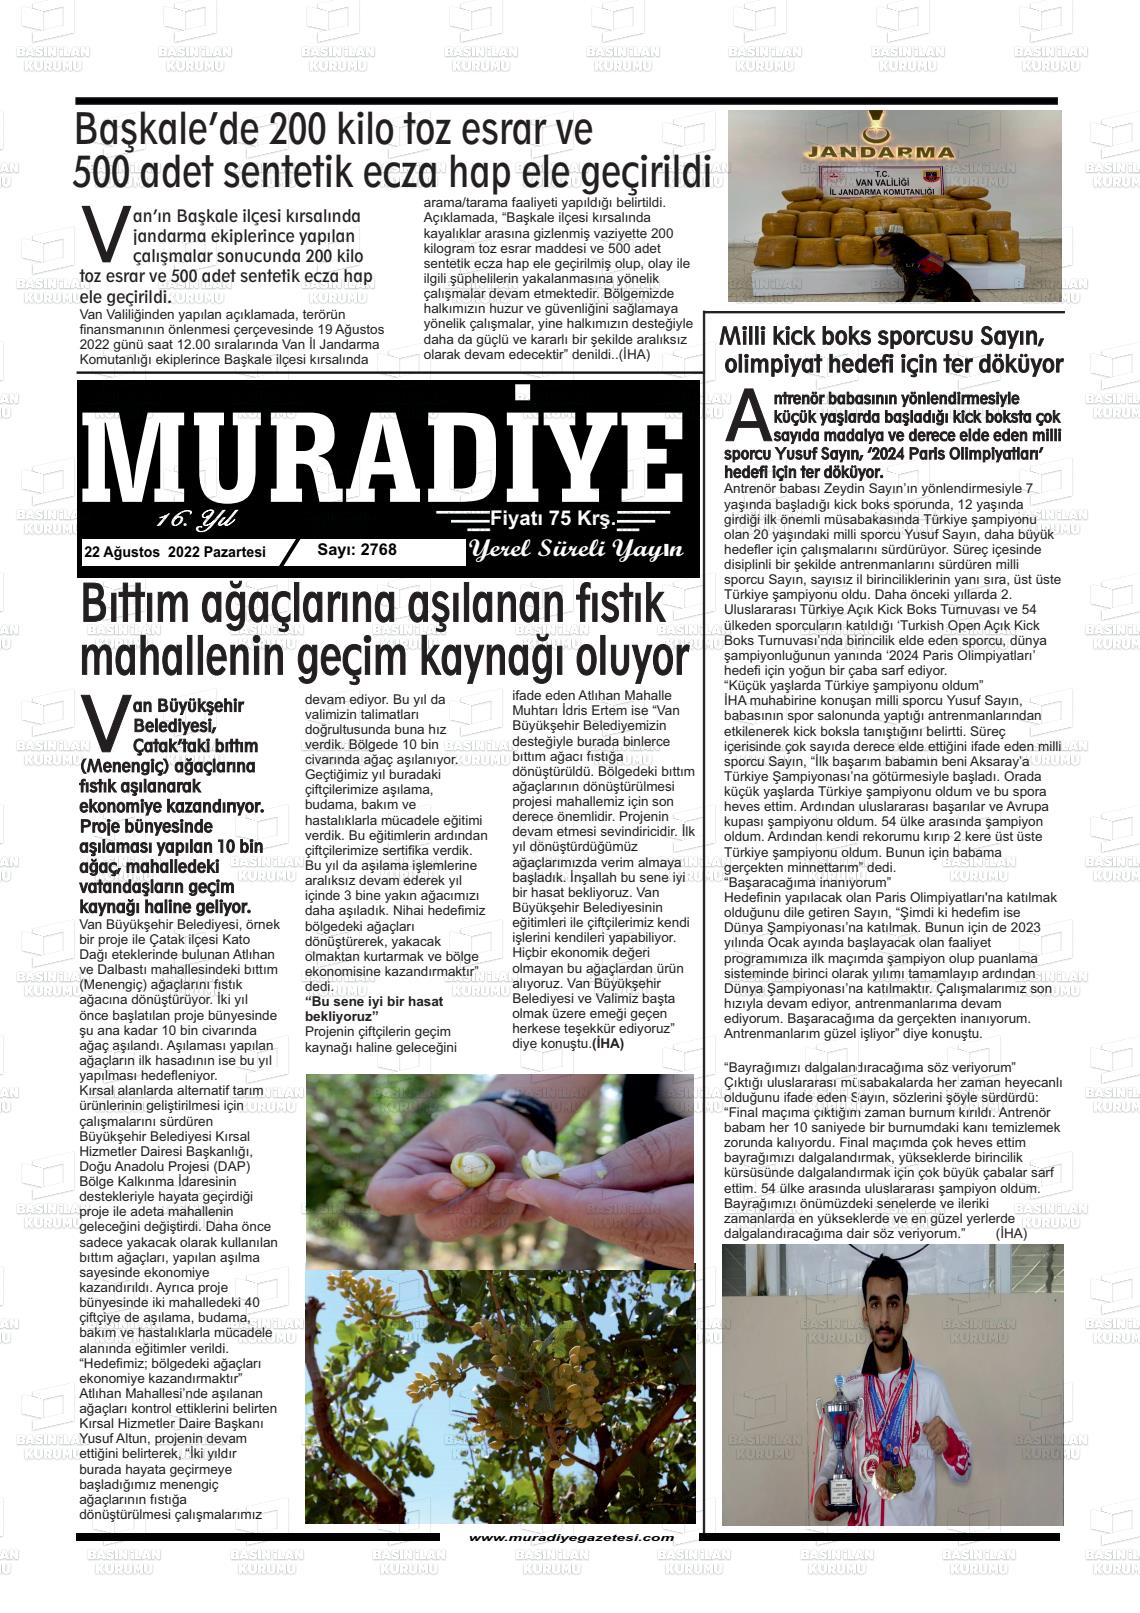 22 Ağustos 2022 Muradiye Gazete Manşeti